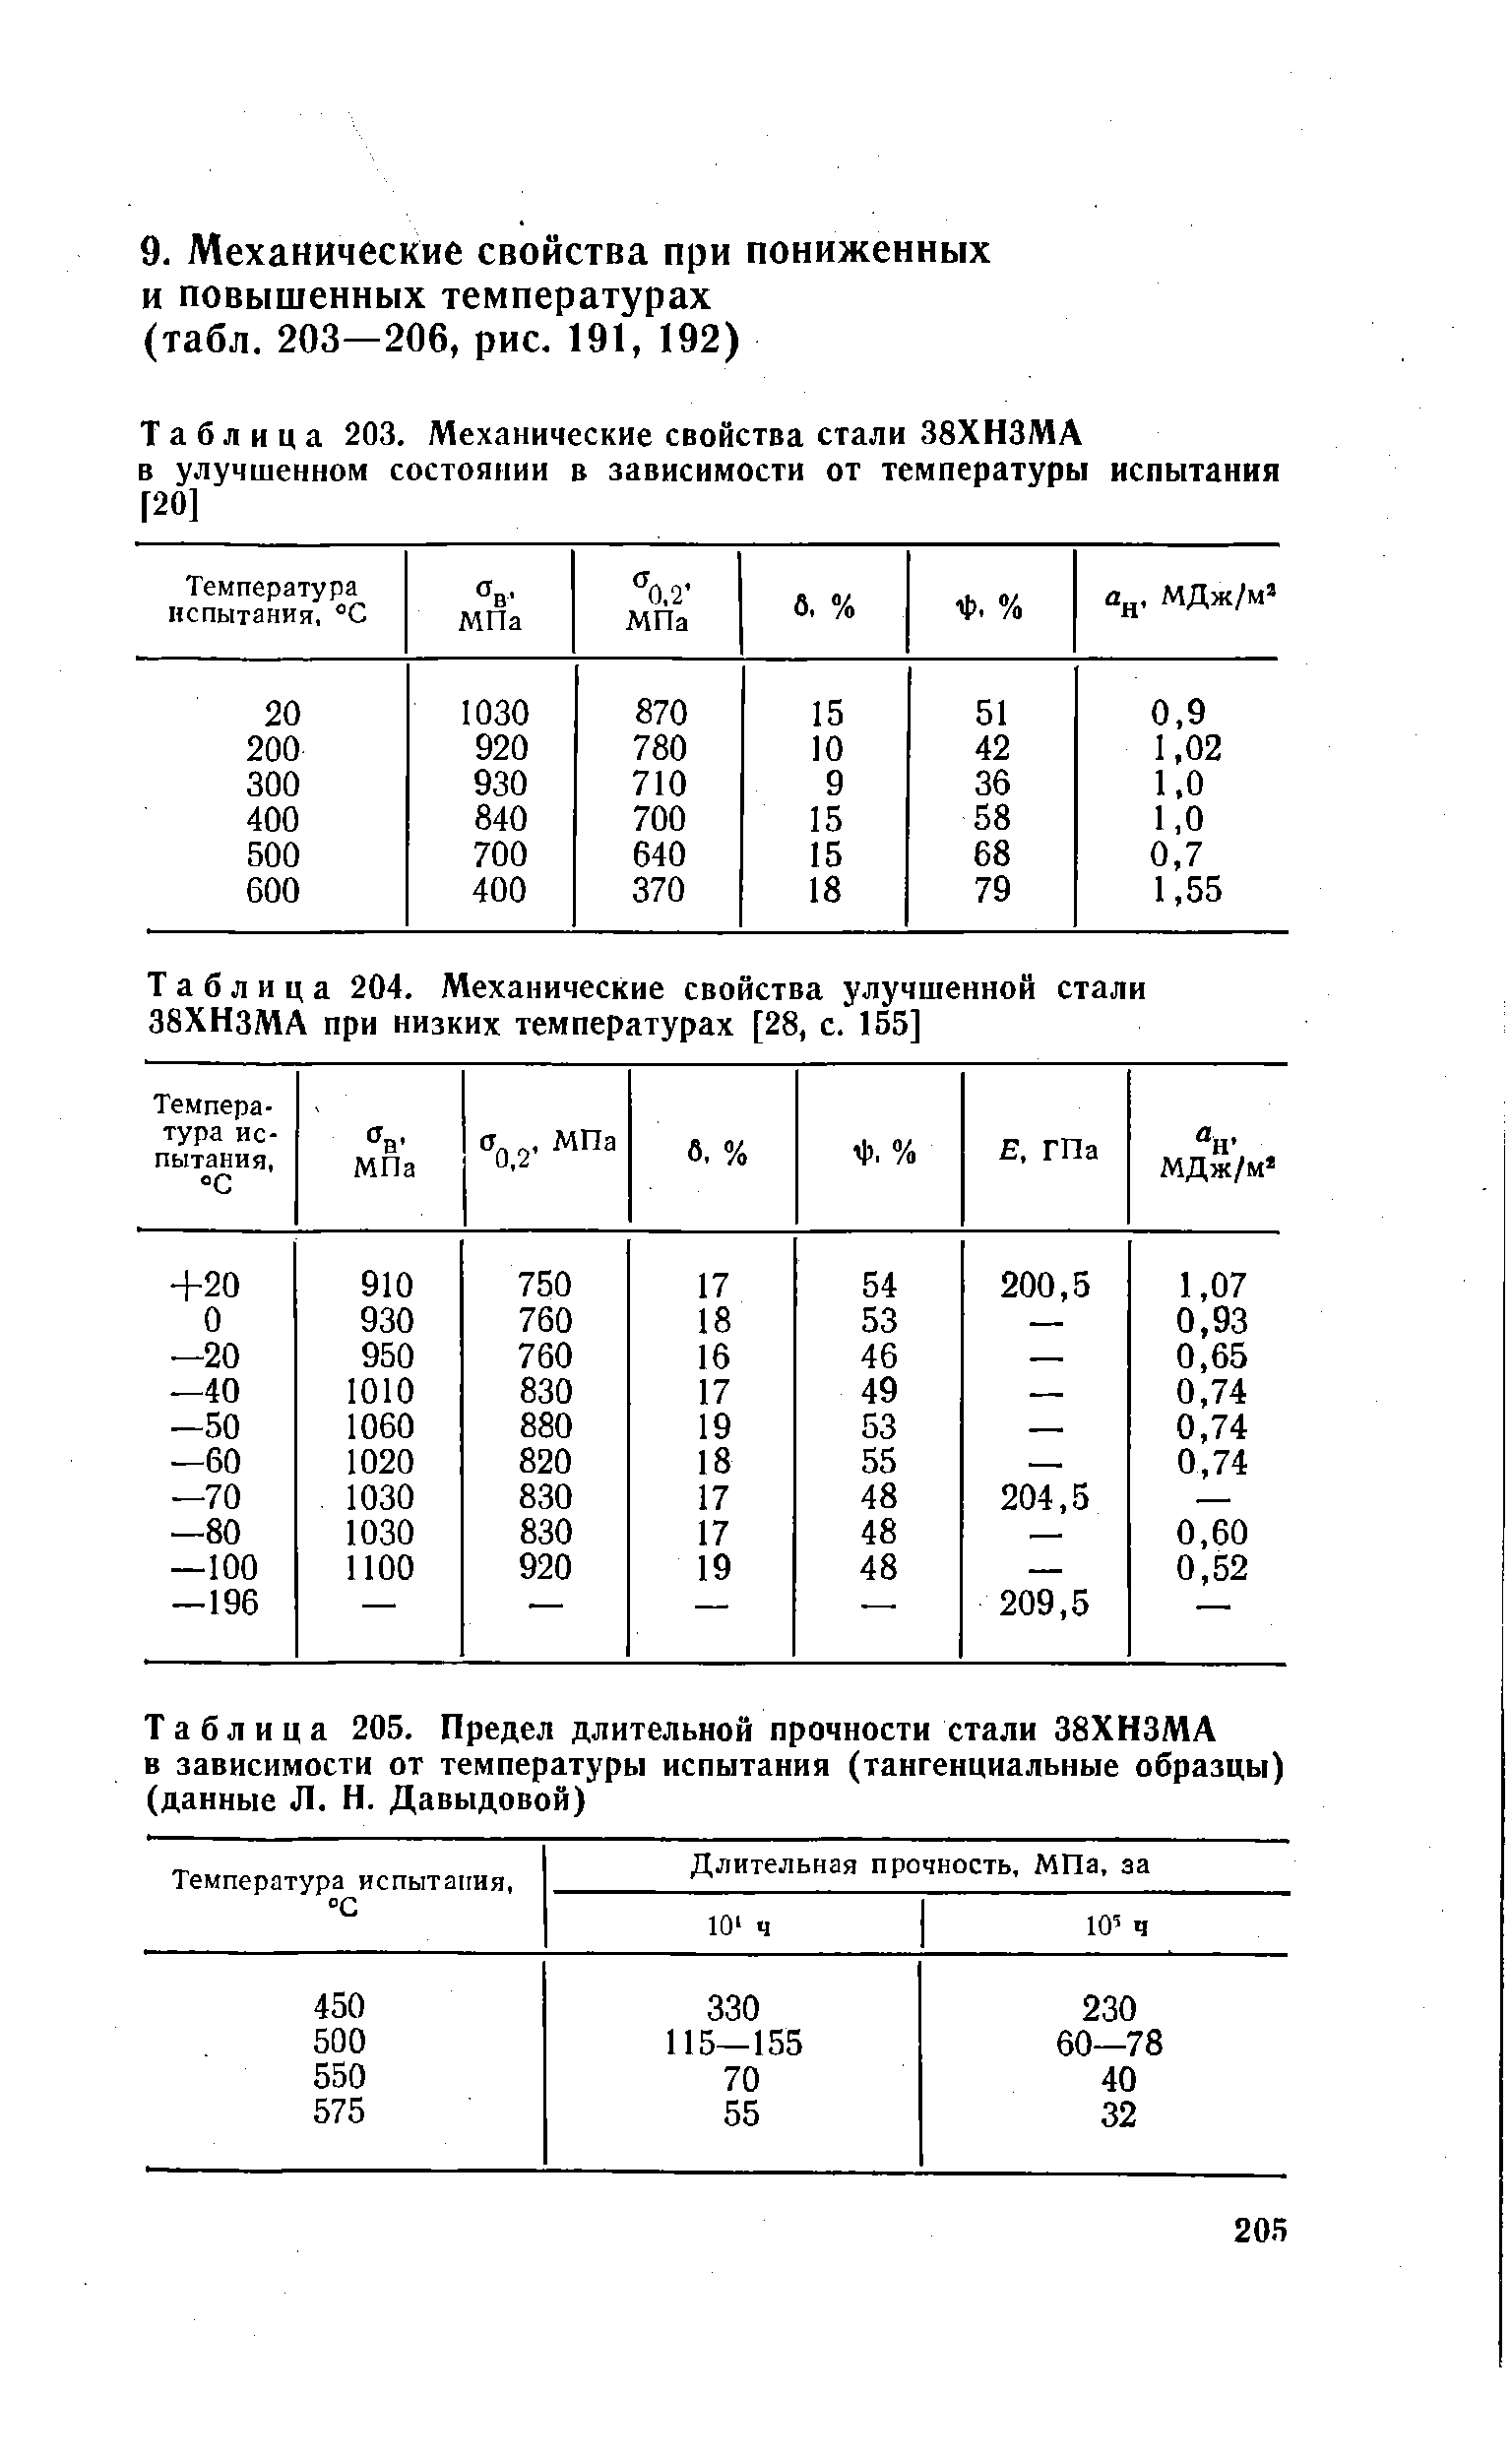 Таблица 205. <a href="/info/7027">Предел длительной прочности</a> стали 38ХНЗМЛ в зависимости от <a href="/info/28878">температуры испытания</a> (тангенциальные образцы) (данные Л. Н. Давыдовой)
